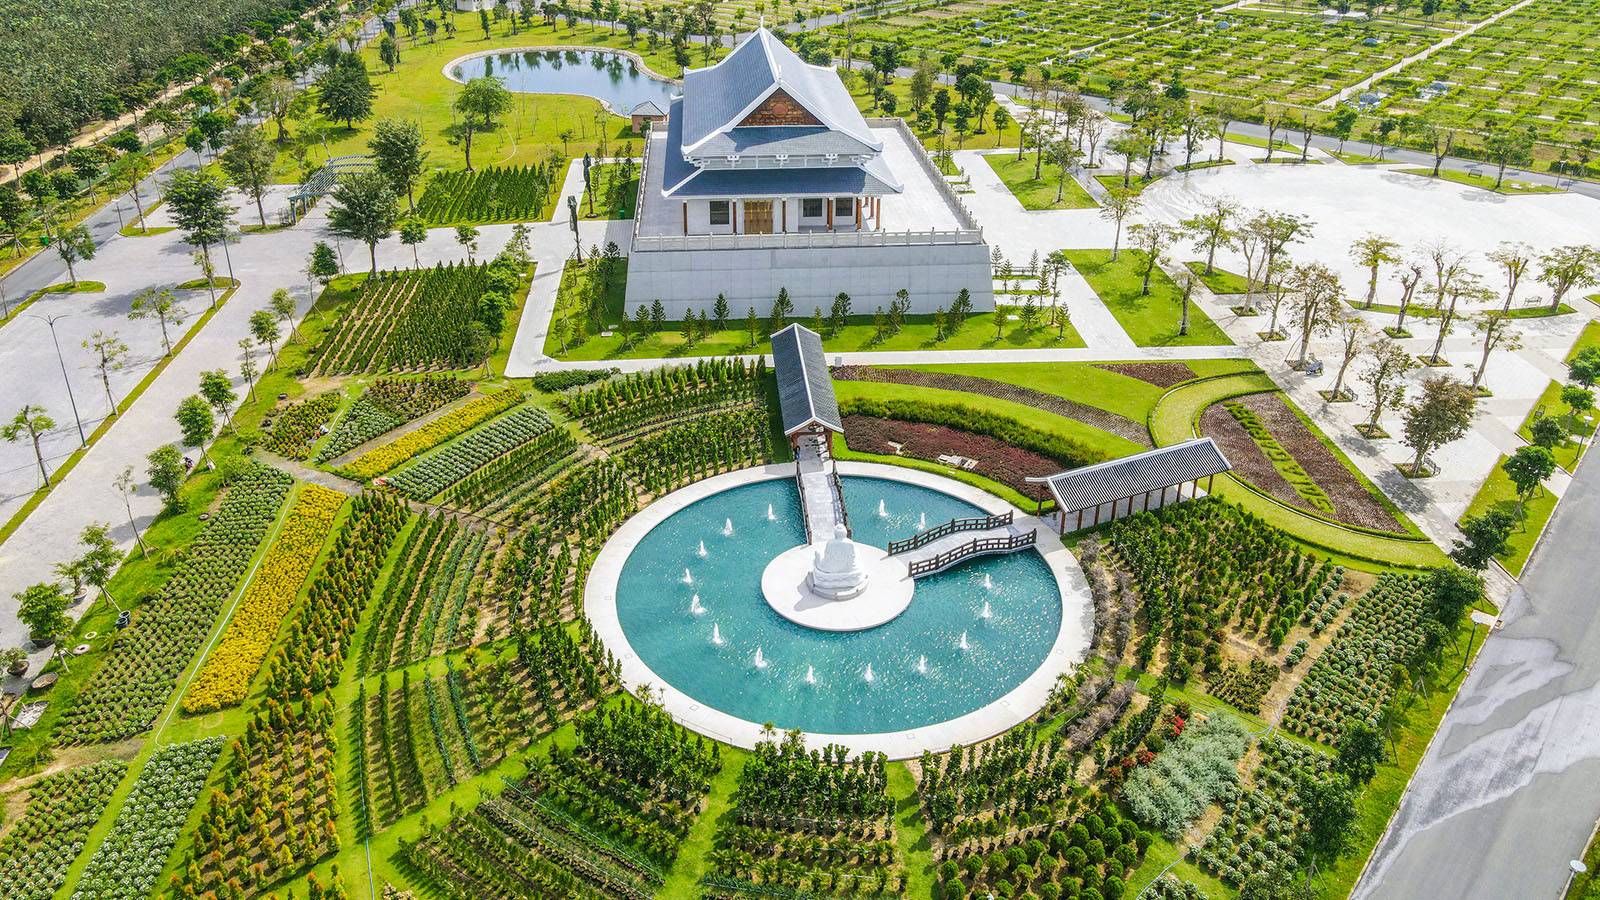 Sala Garden - Hoa Viên Nghĩa Trang Sinh Thái | Beegreen JSC